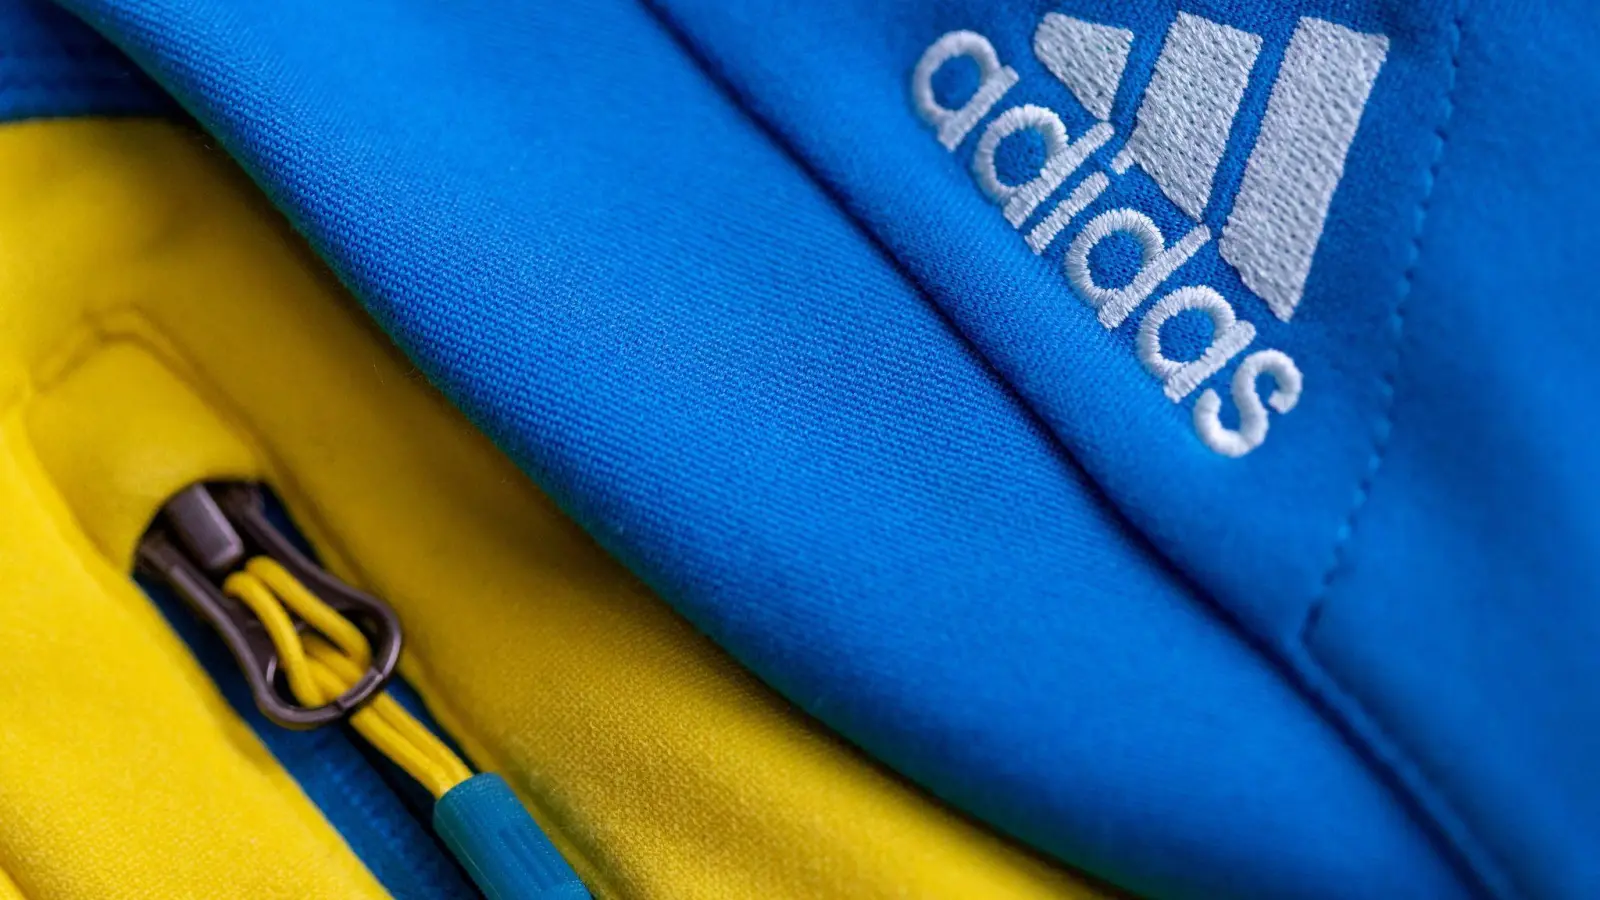 Das Logo des Sportartikelherstellers adidas auf einer blau-gelben Jacke. (Foto: Daniel Karmann/dpa/Symbolbild)